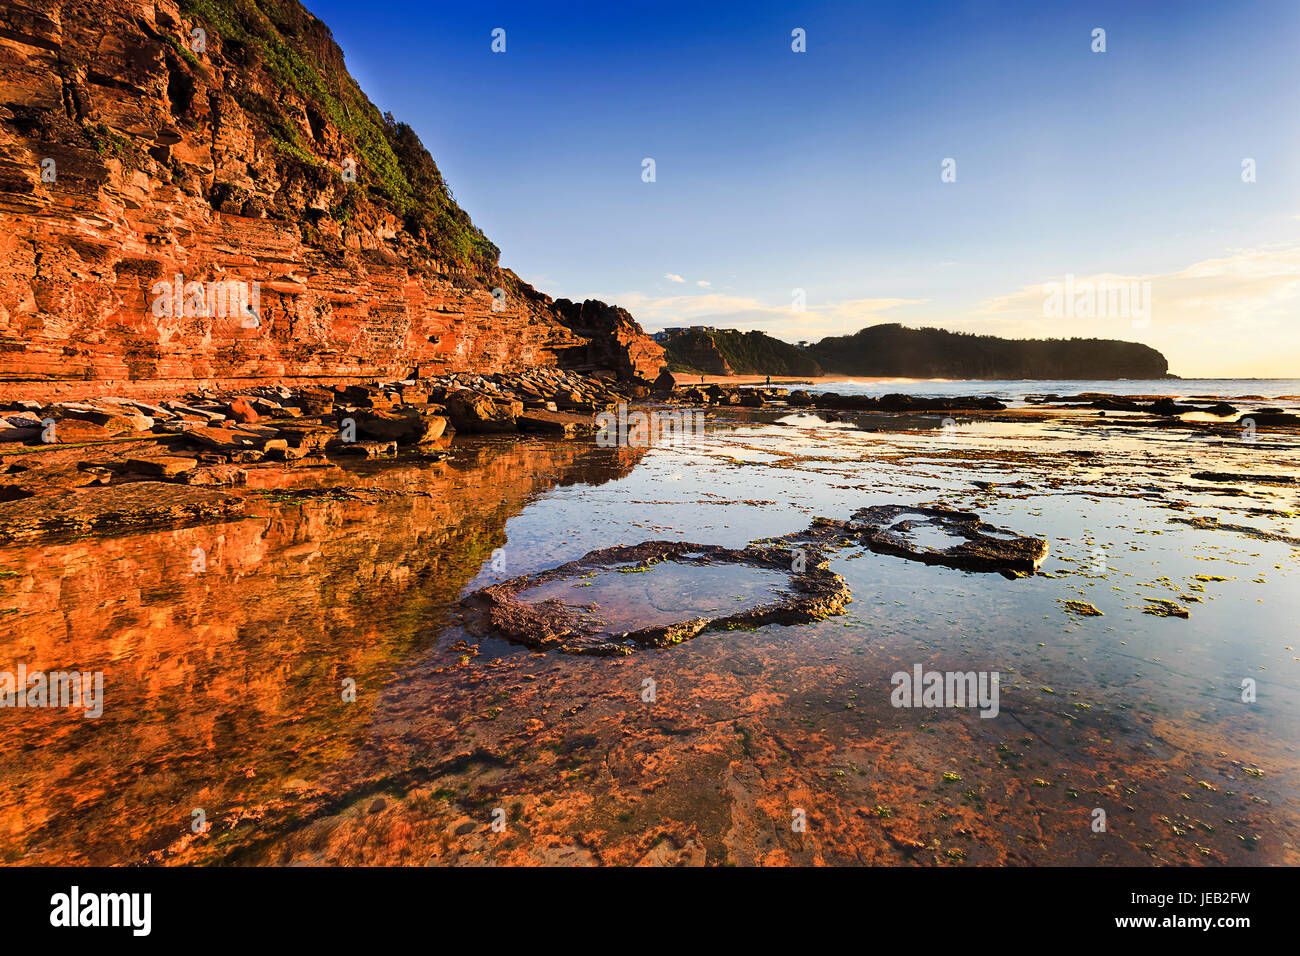 Erwärmen von steigenden Morgen Sune Rock Cliff Landzunge von Narrabeen Strand vor australischen Pazifikküste beleuchtet. Bei Ebbe Aemotio flach flache Pfützen Stockfoto